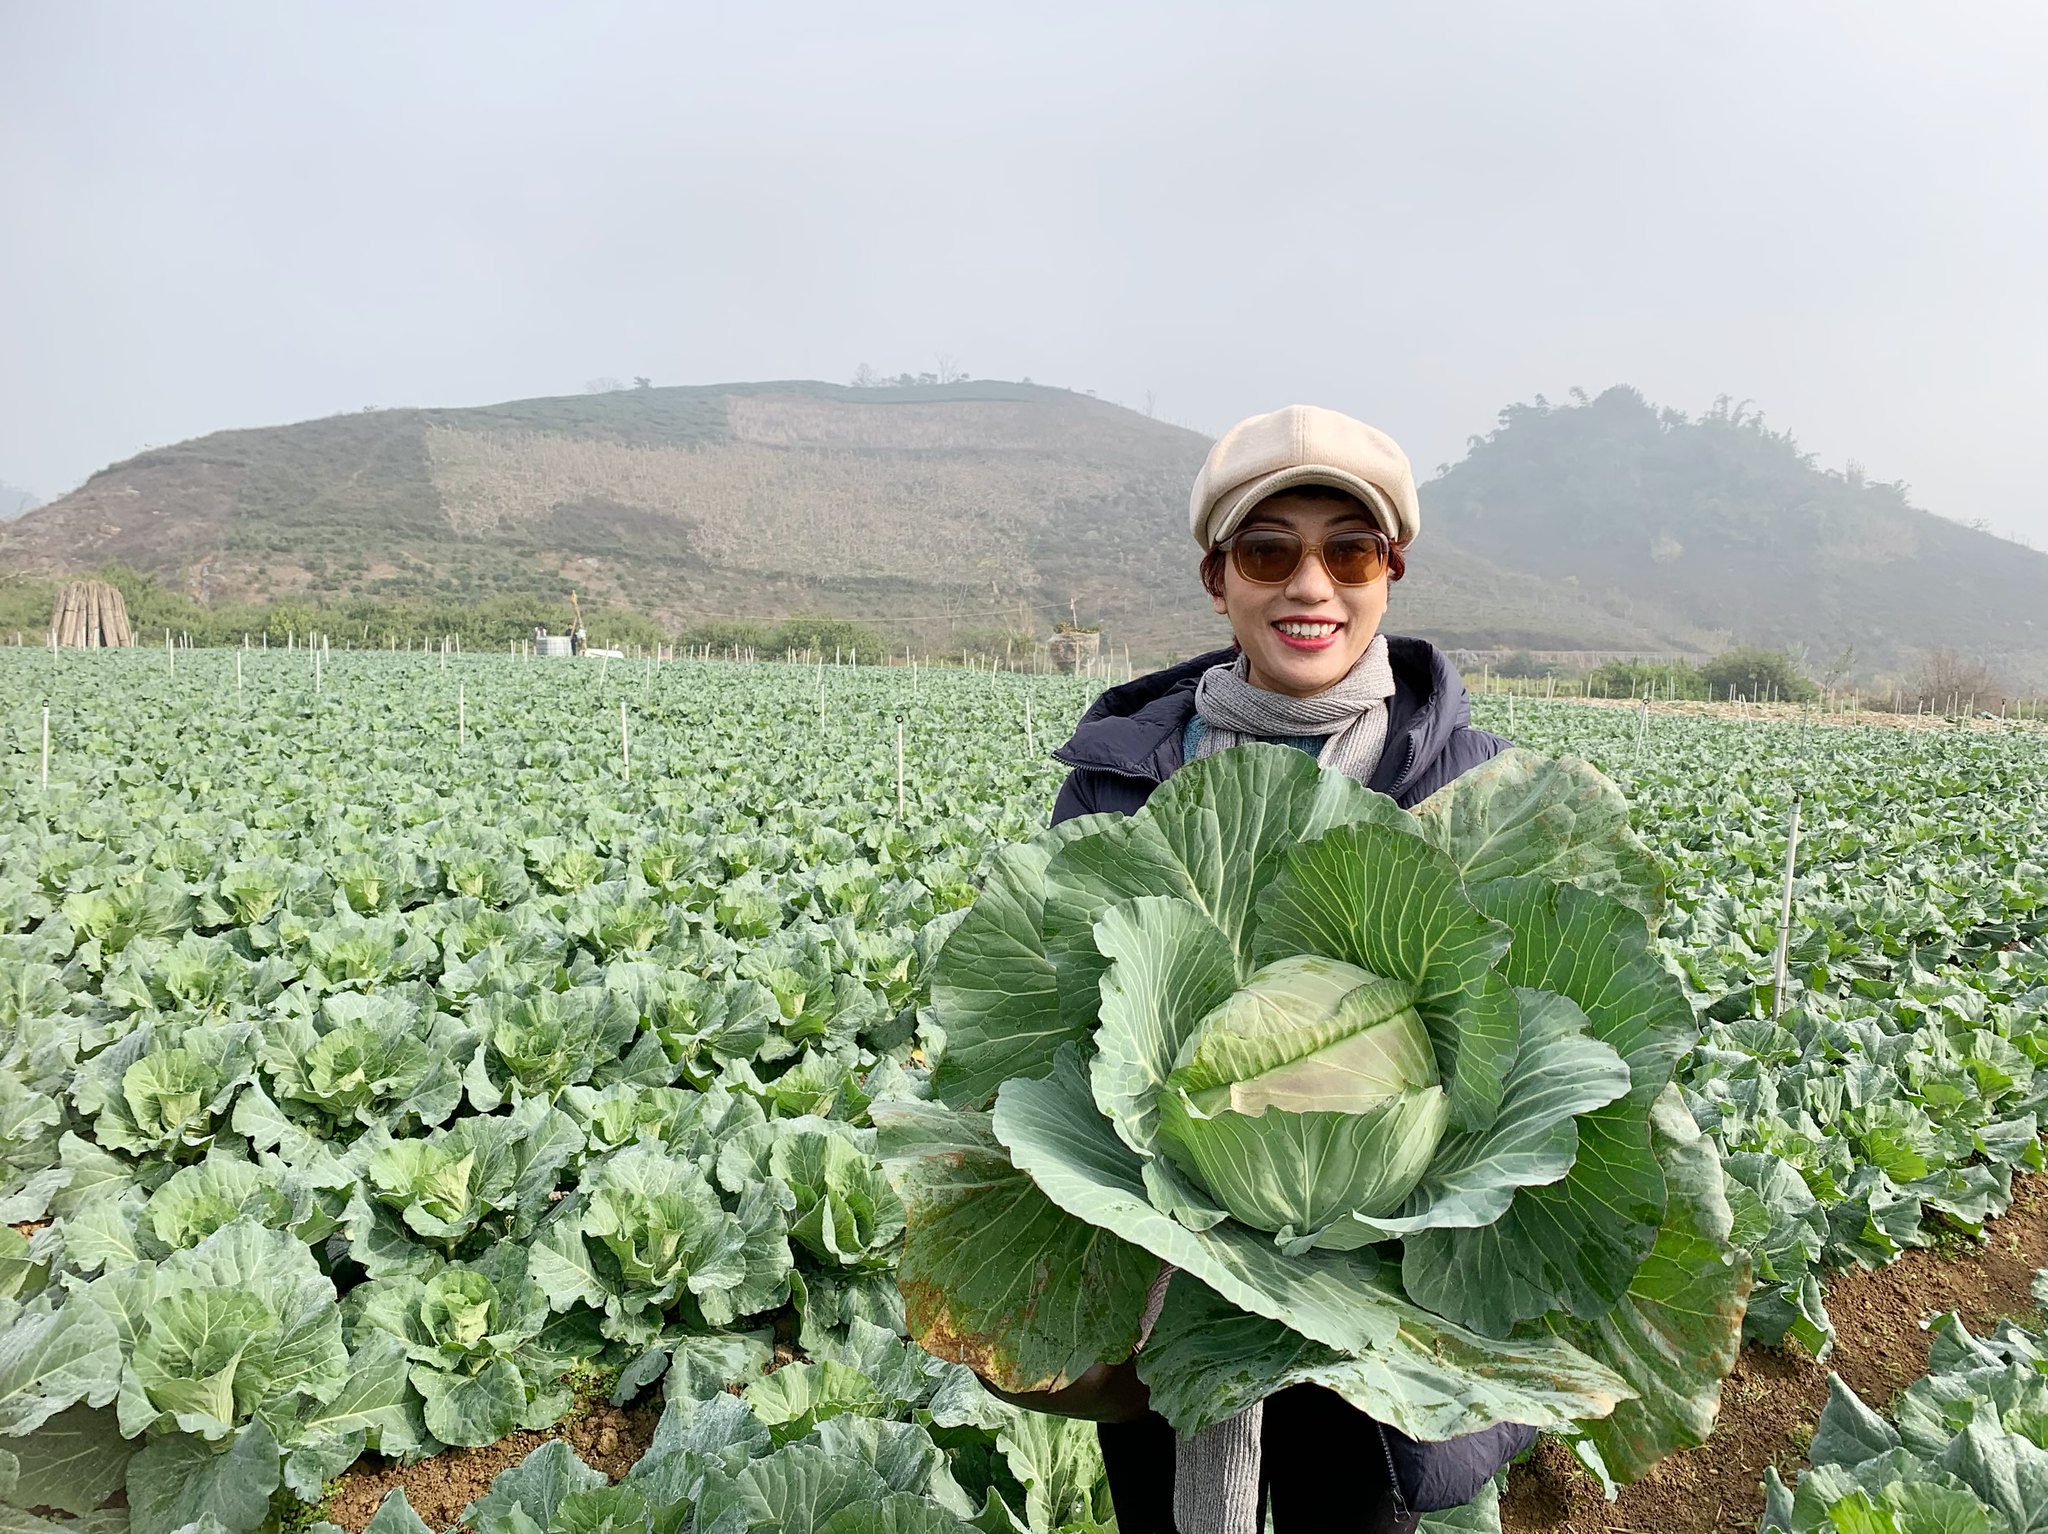   Bắp cải Mộc Châu được trồng theo tiêu chuẩn VietGAP, là sản phẩm tiêu biểu, có sức cạnh tranh cao khi có thể xuất vụ vào mùa hè, cung cấp cho thị trường Hà Nội và các tỉnh phía Bắc, rất thơm ngon đậm vị.   